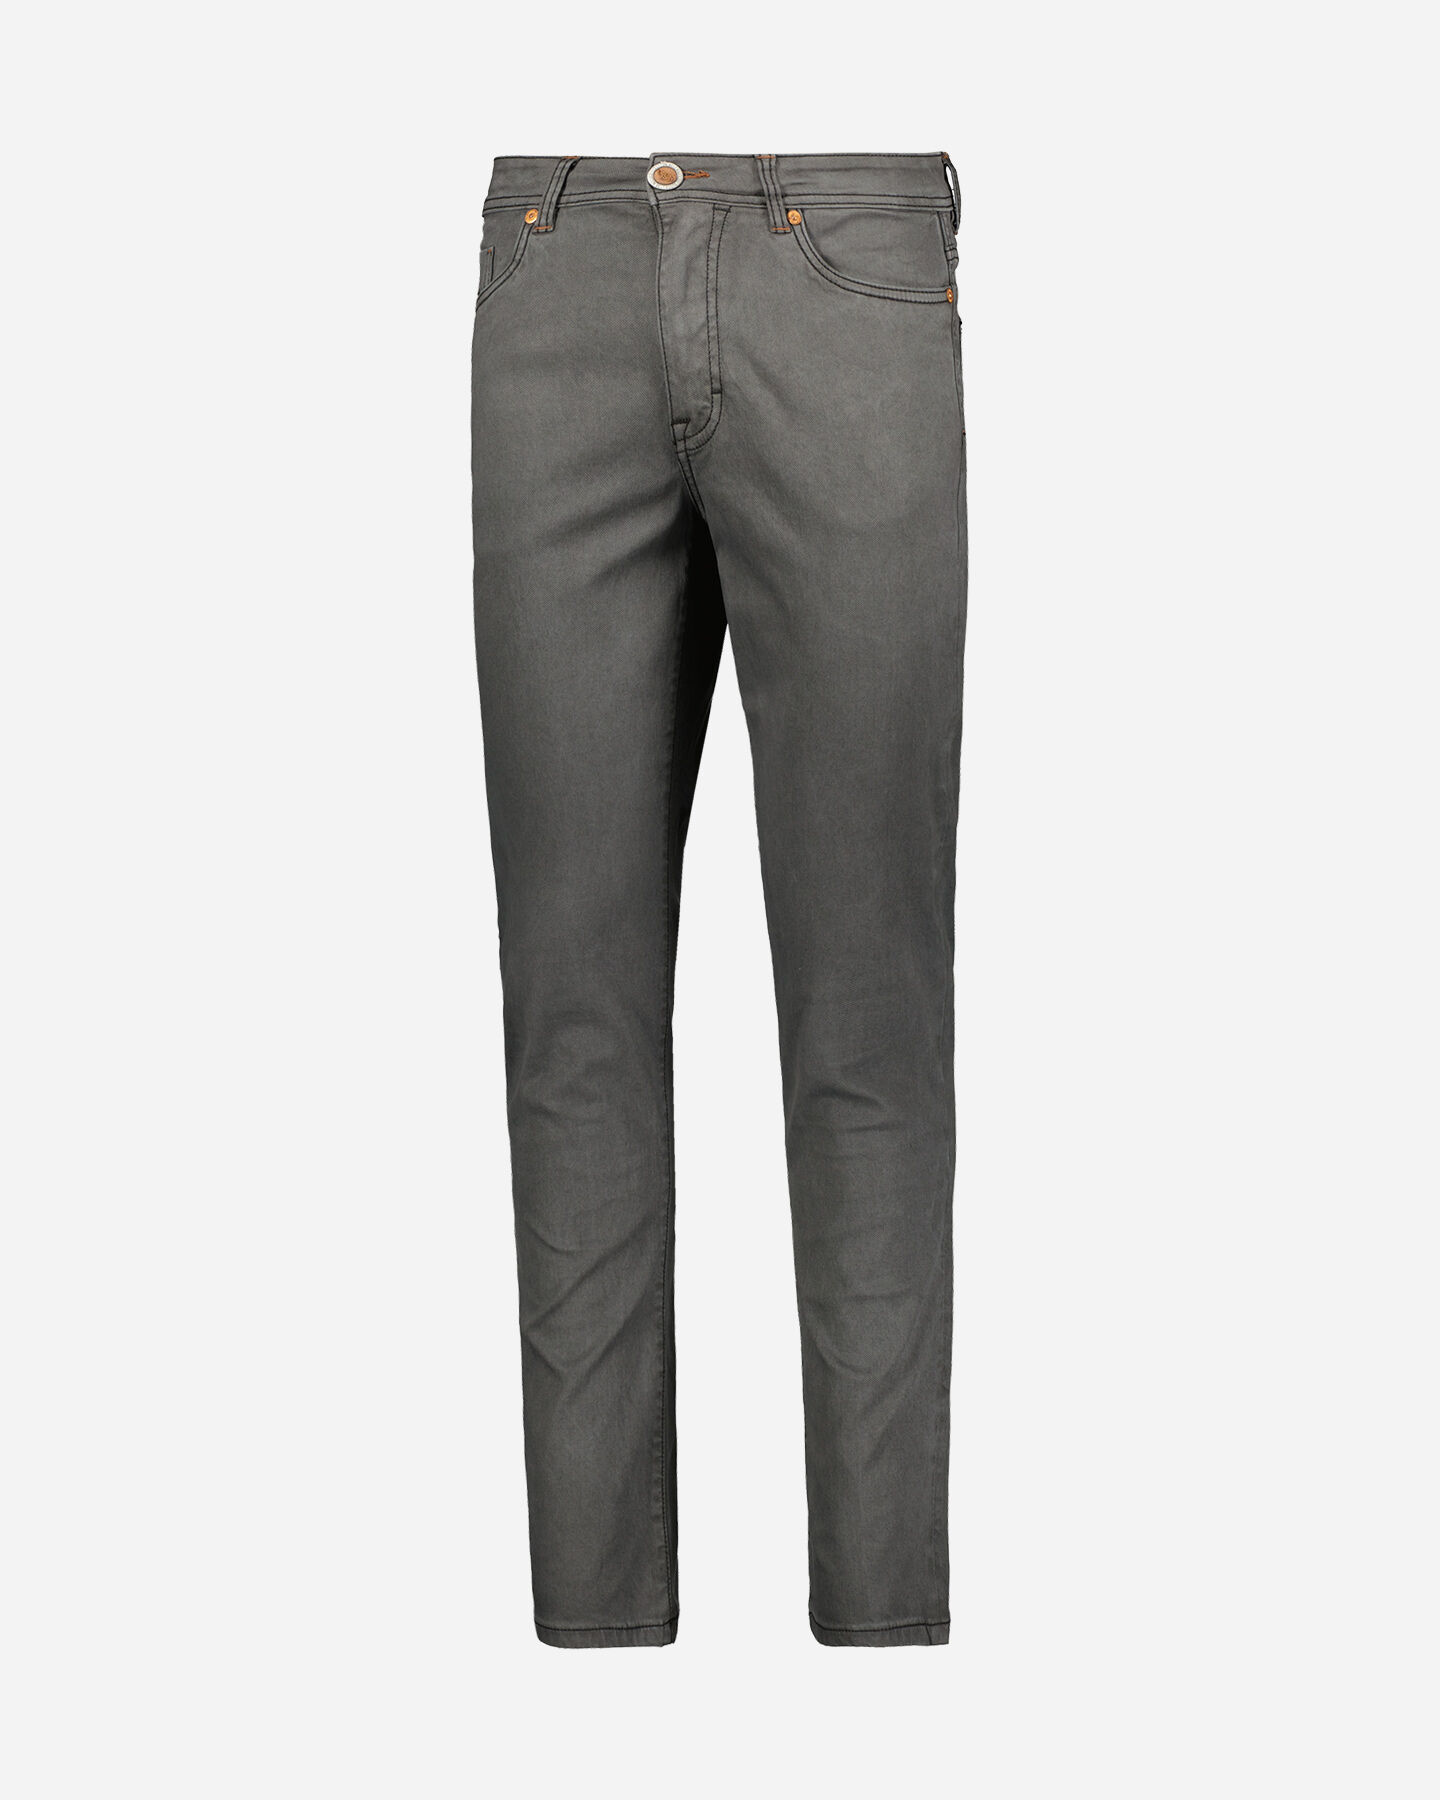  Pantalone COTTON BELT HAMILTON M S4113473|910|40 scatto 0